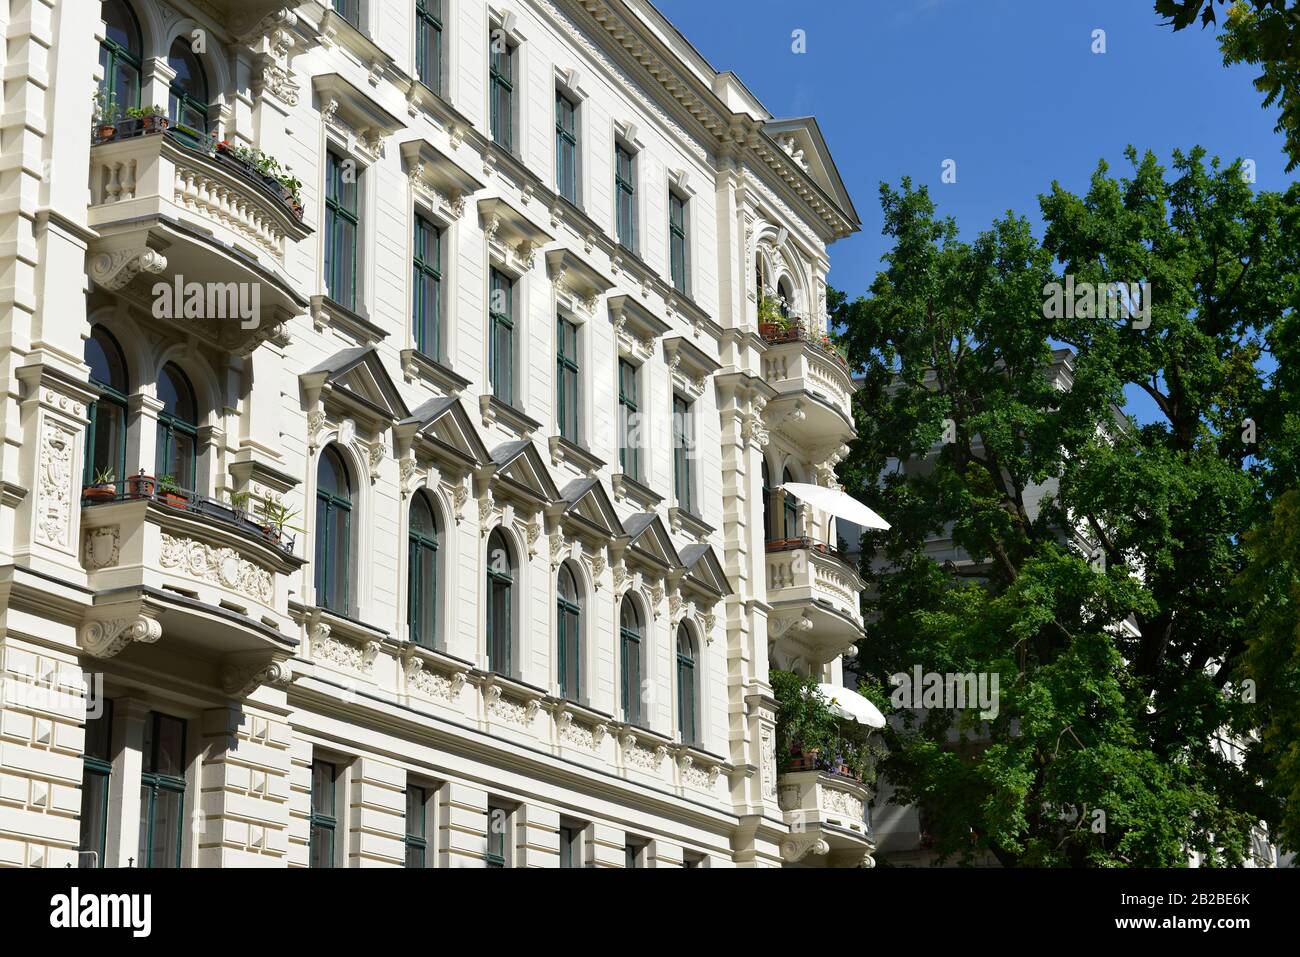 Altbauten, Riehmers Hofgarten, Kreuzberg, Berlin, Deutschland Stock Photo